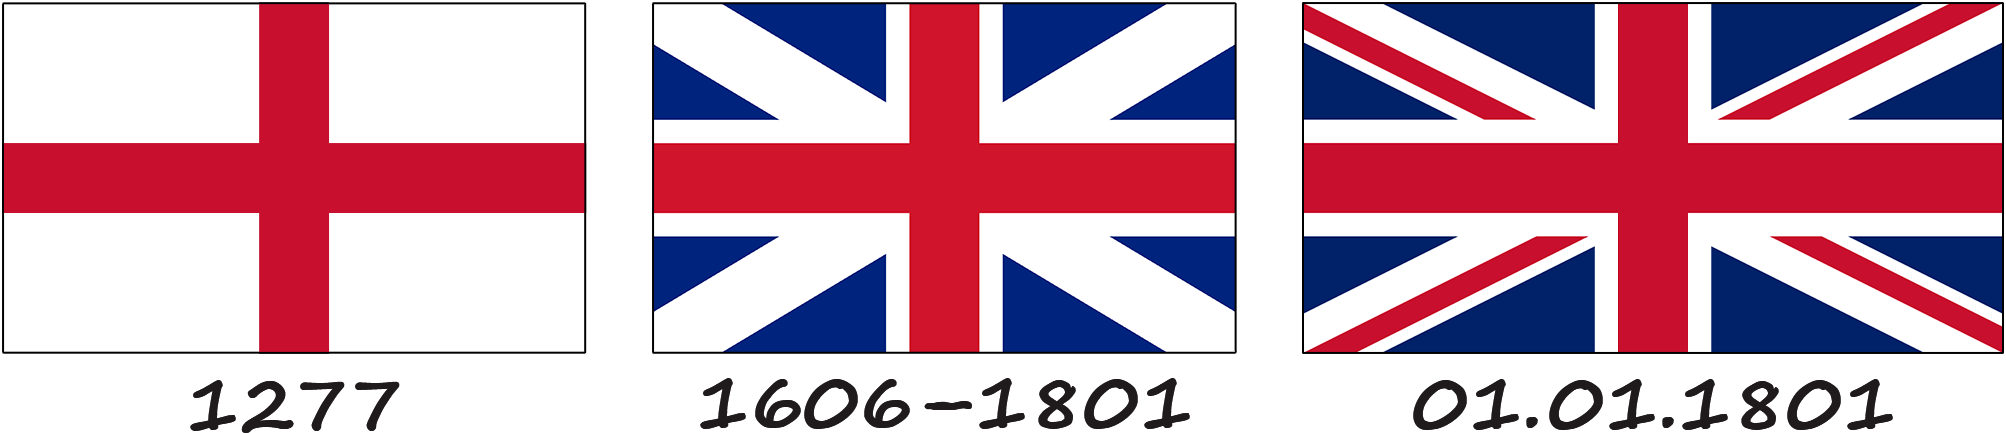 Historia de la bandera del Reino Unido